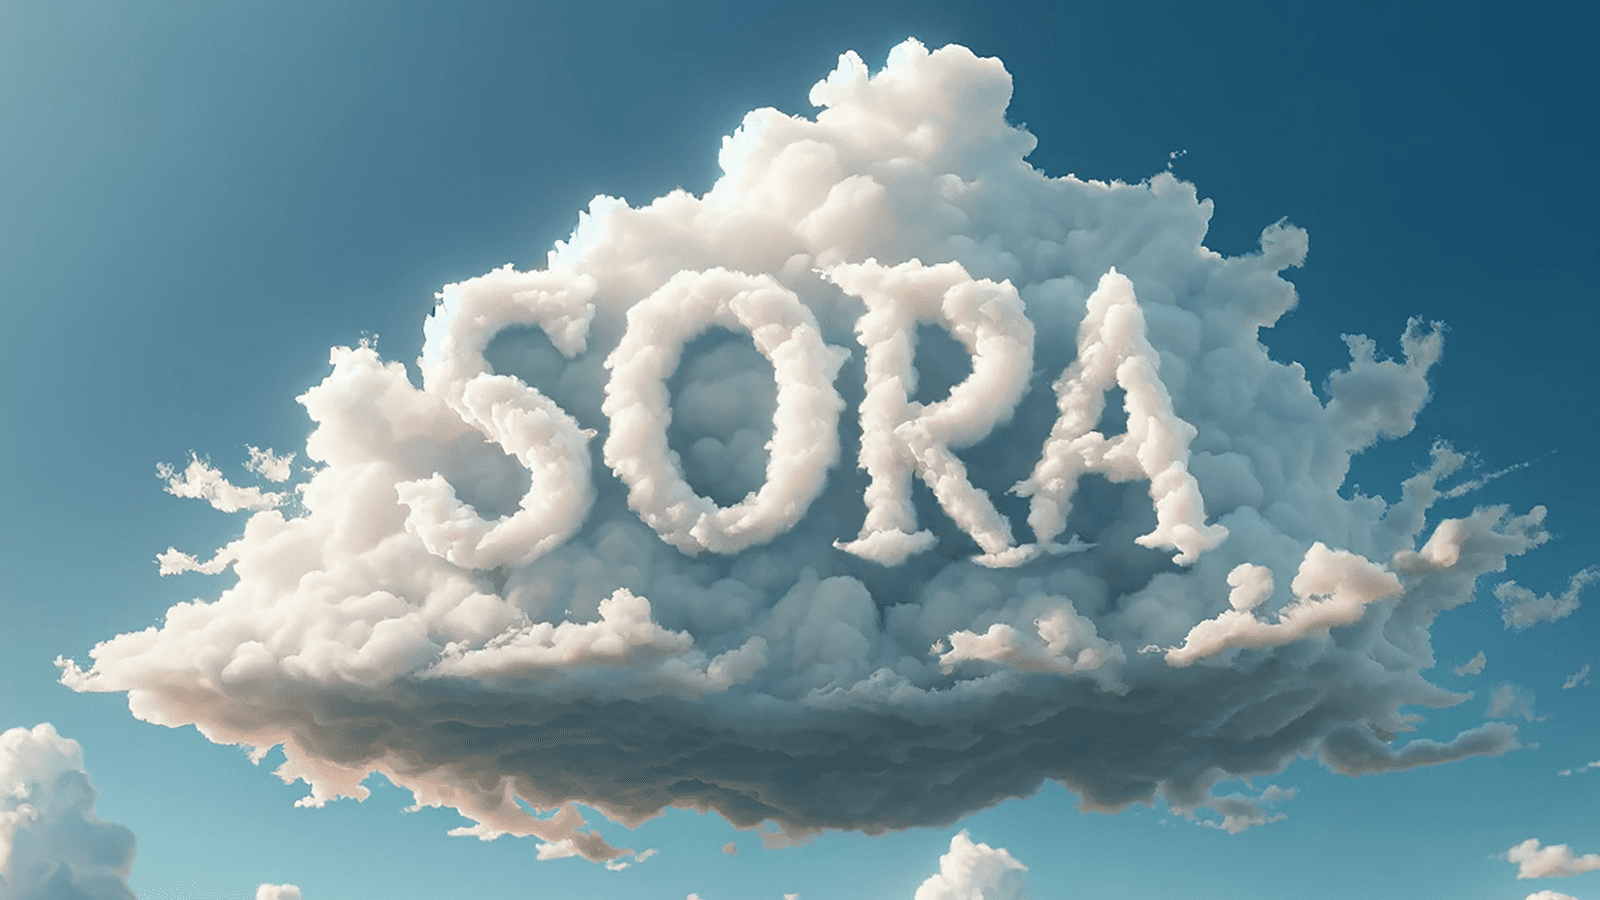 Imagen do céu com uma nuvem em destaque e o nome Sora no centro da imagem.